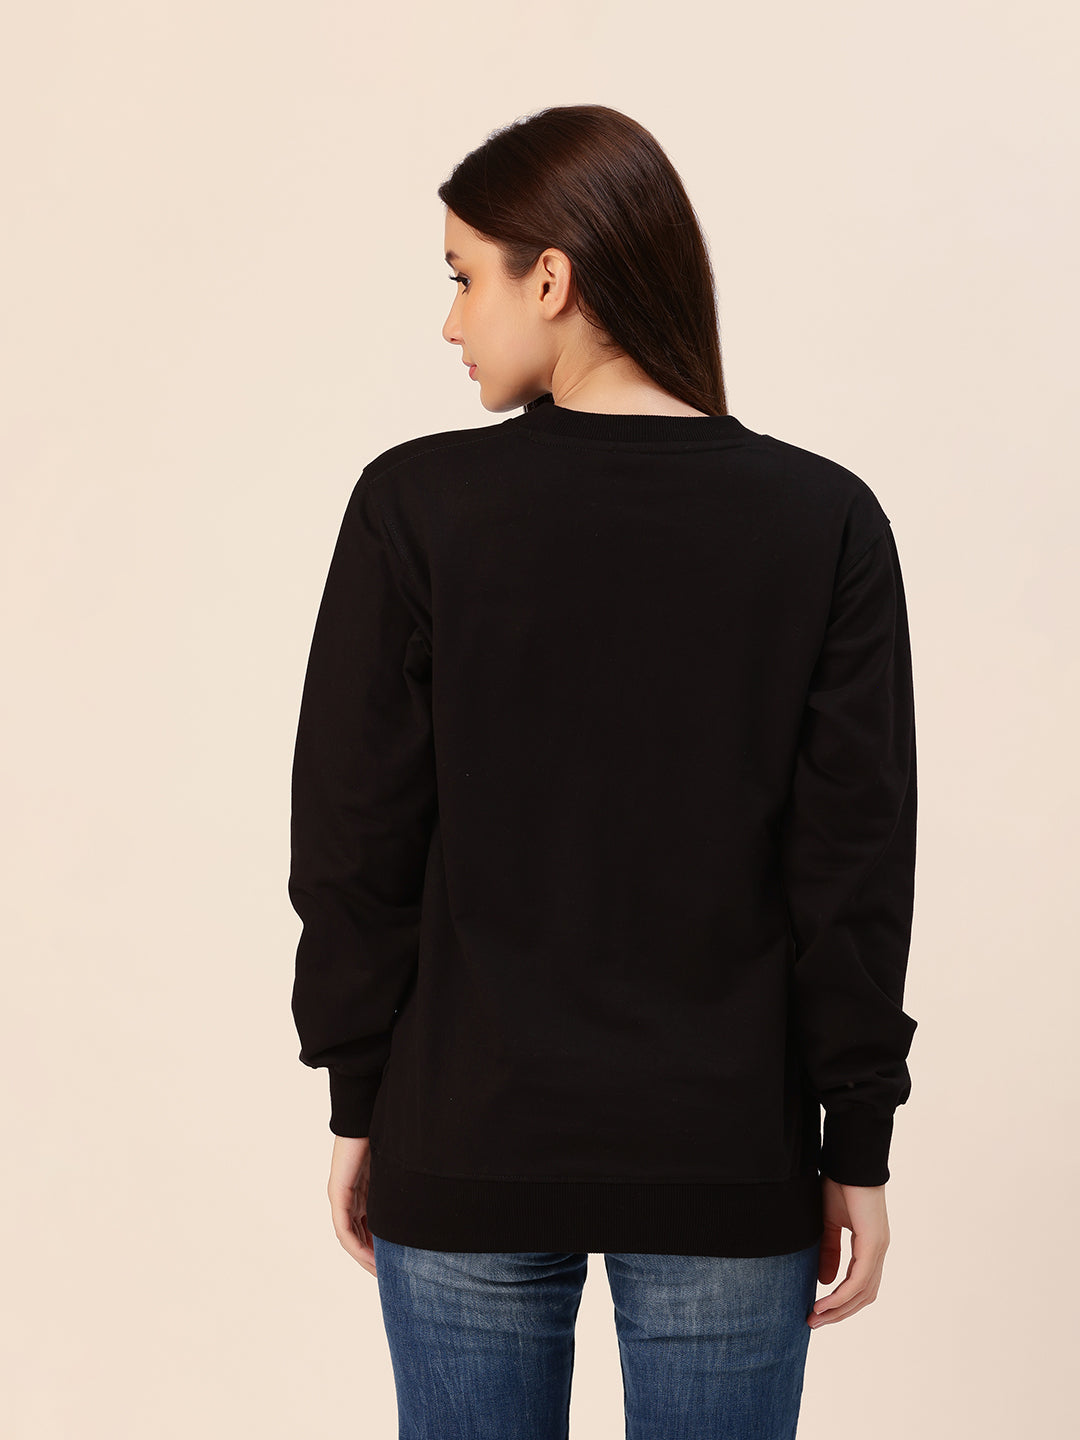 Blassed Black Printed Sweatshirt